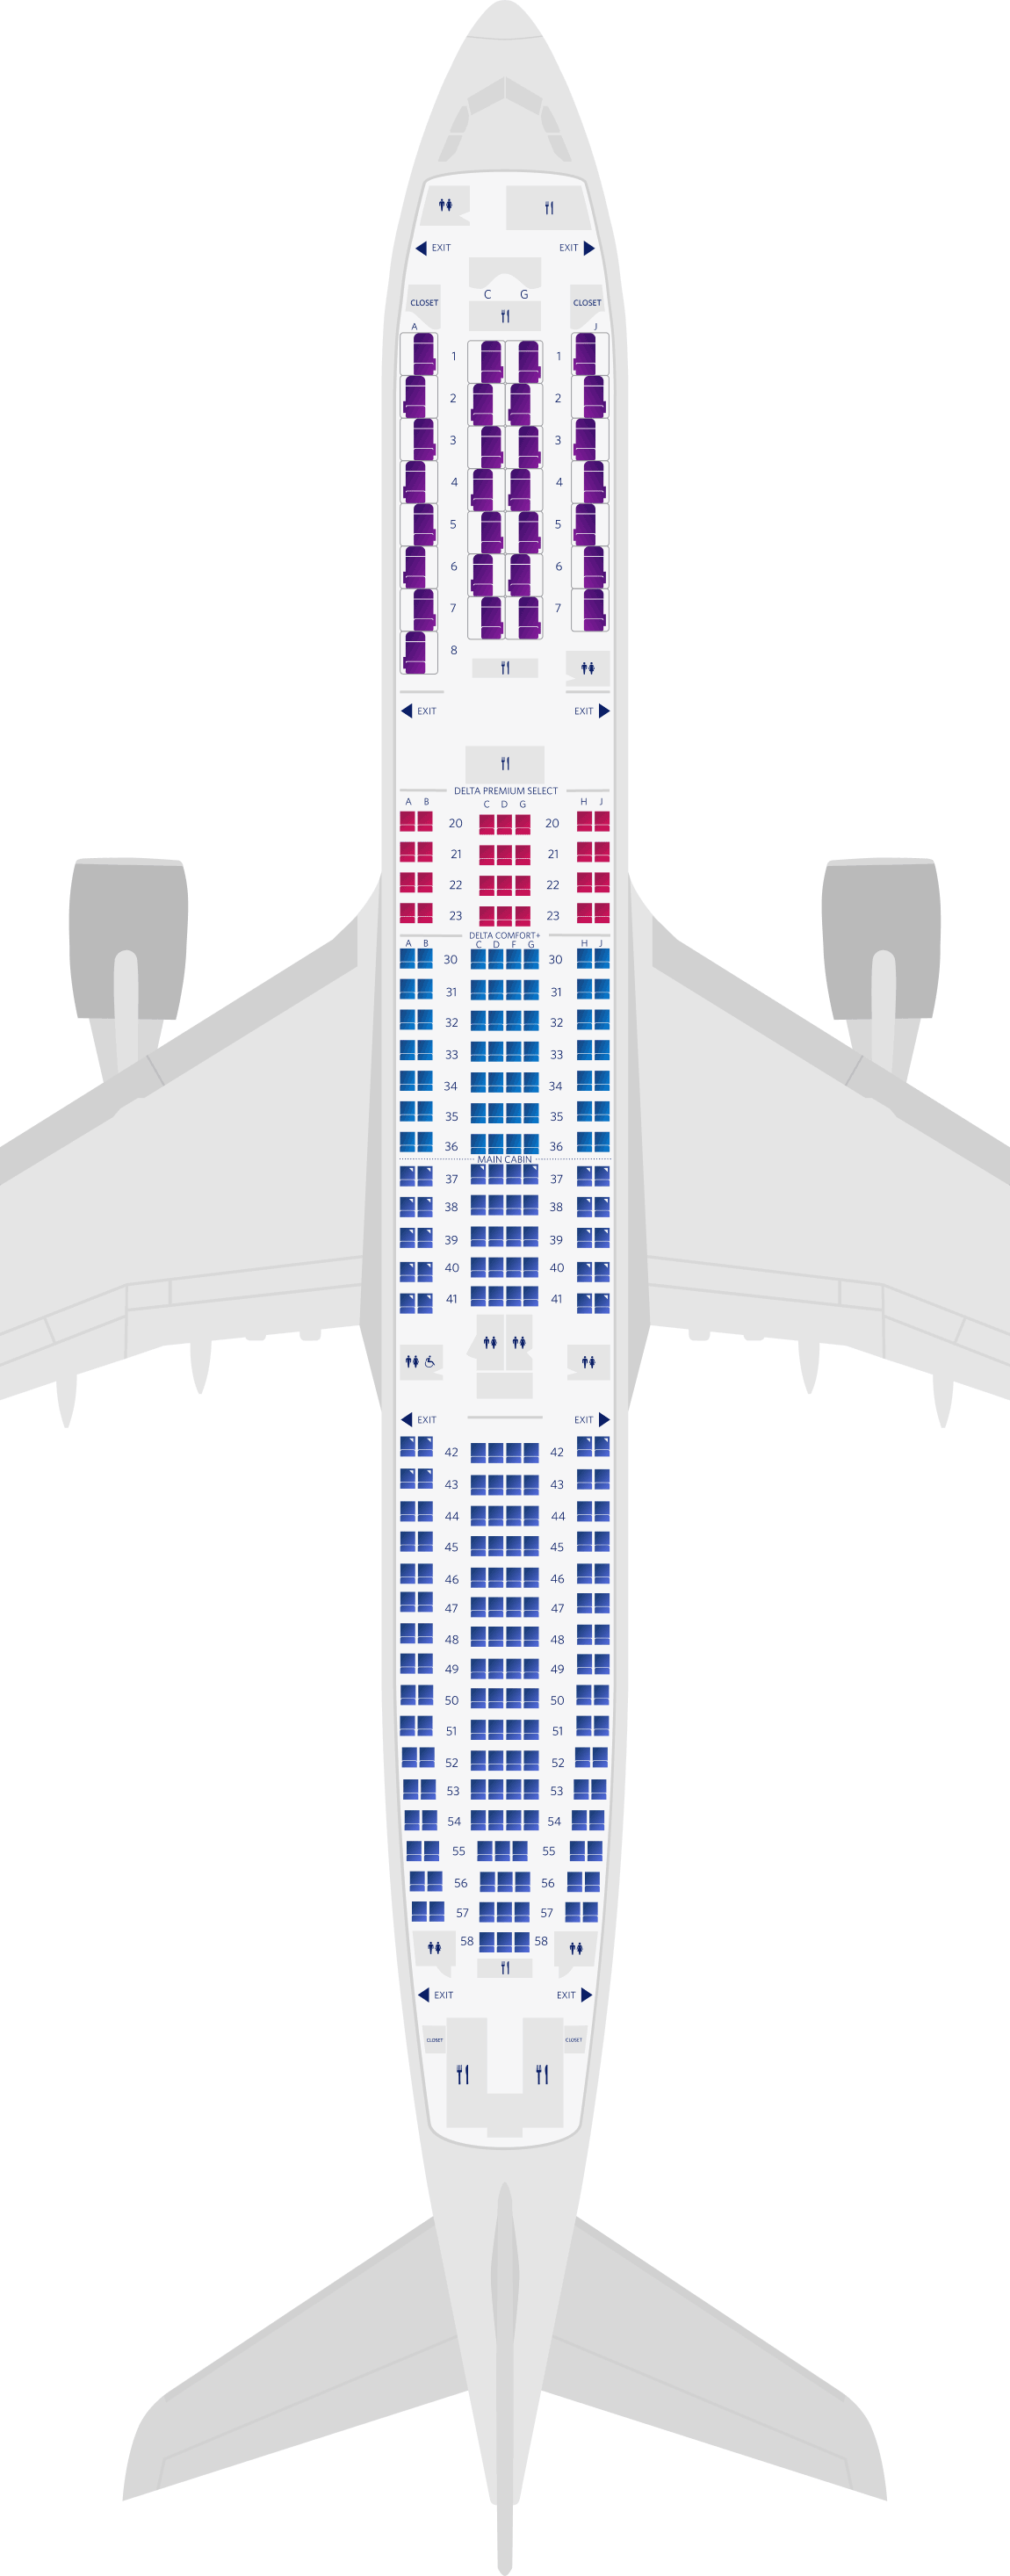 Plan des sièges de l'Airbus A330-900neo